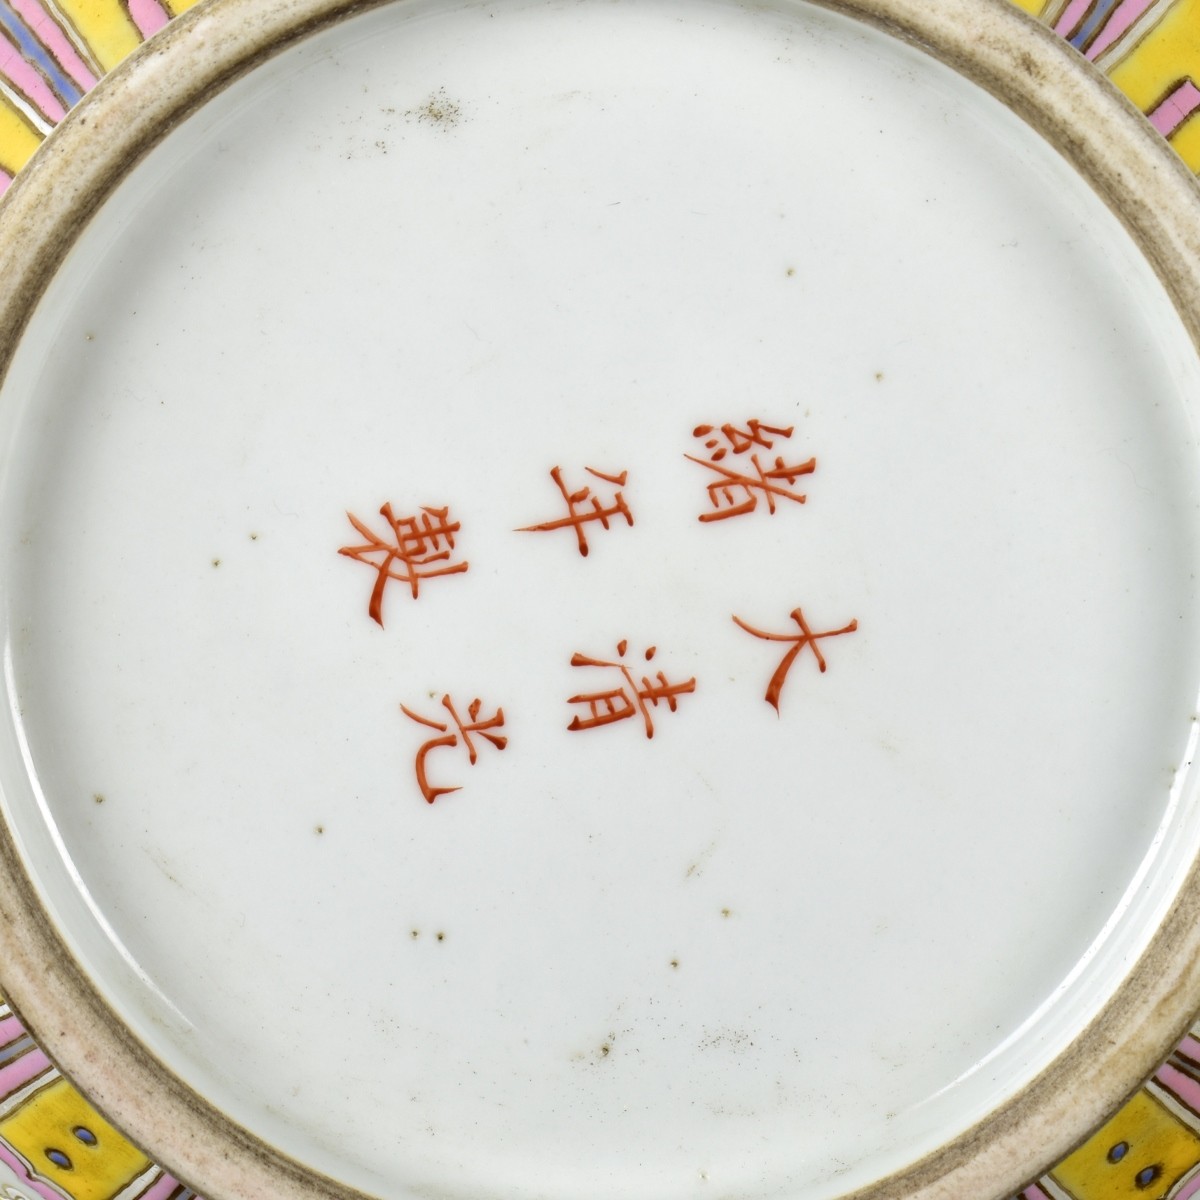 Large Chinese Pear-Shaped Porcelain Vase